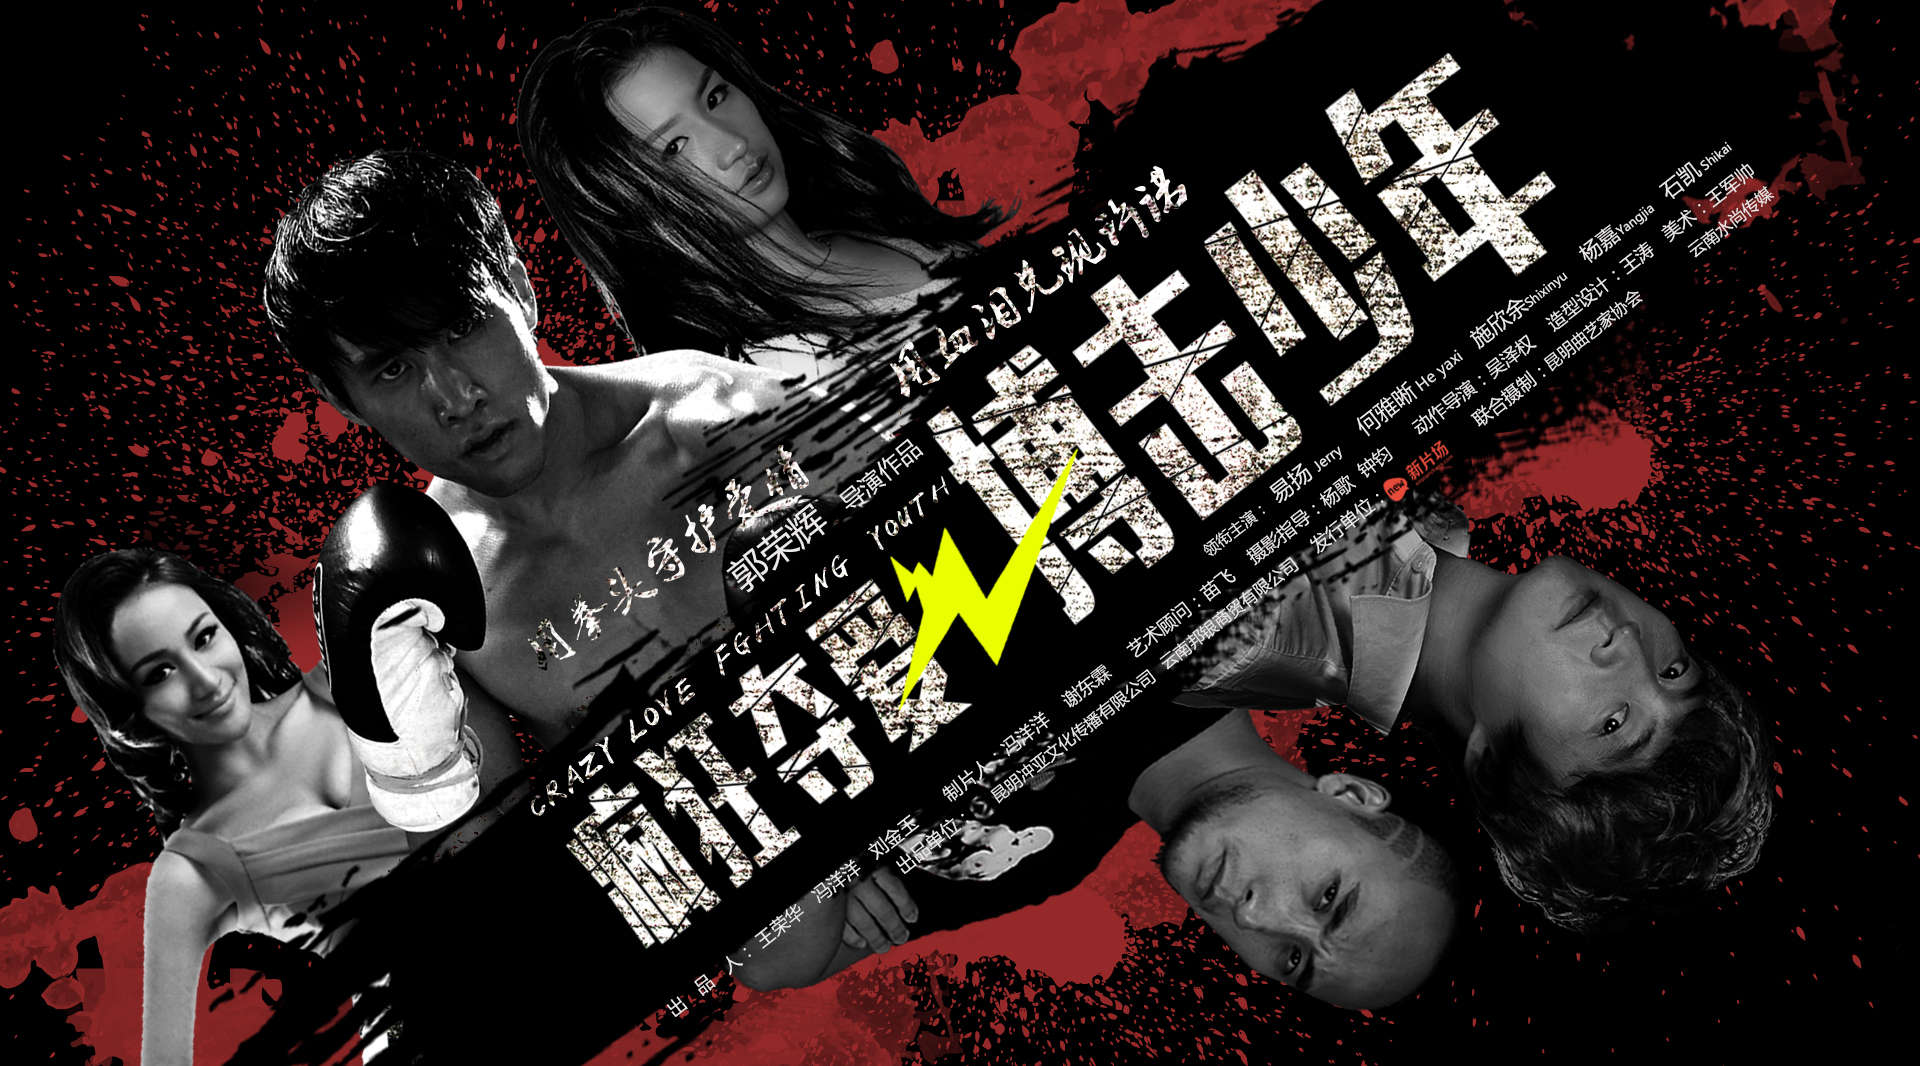 电影《疯狂夺爱之搏击少年》成龙徒弟领衔主演。